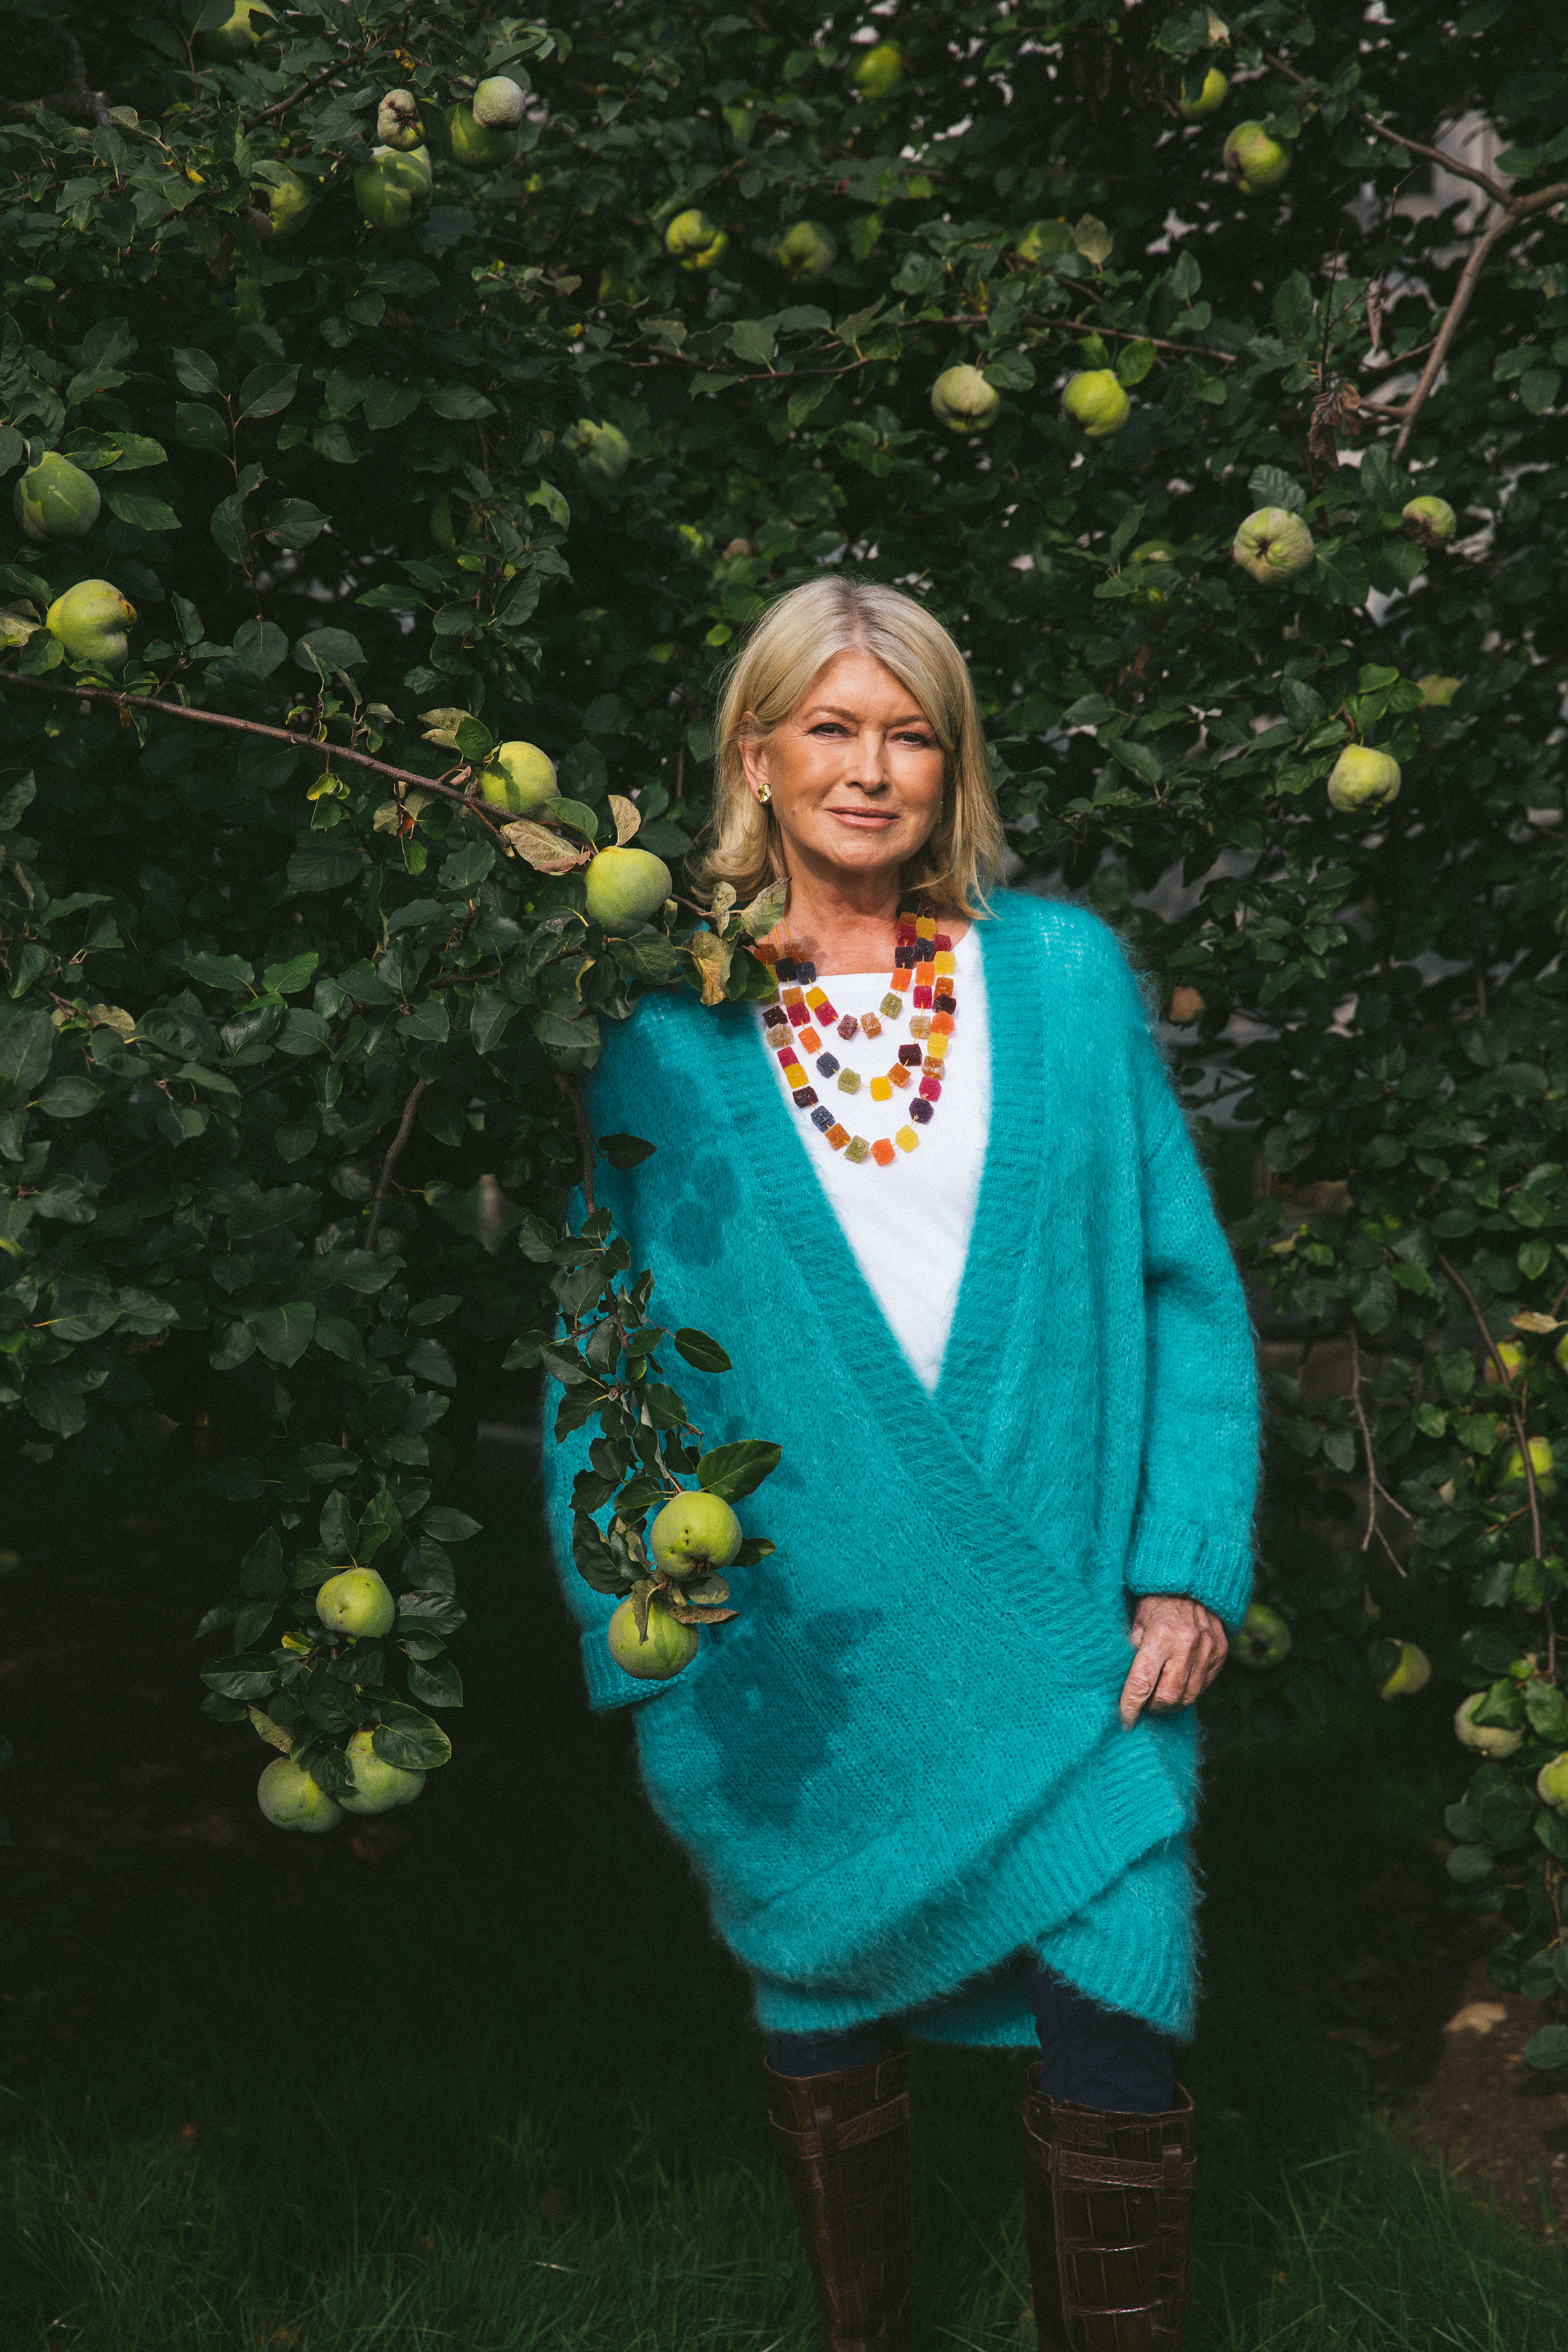 Martha Stewart cosecha sus propios alimentos en el jardín o invernadero de su casa, para preparar sus batidos verdes y consumir alimentos orgánicos. (Celeste Sloman/The New York Times)